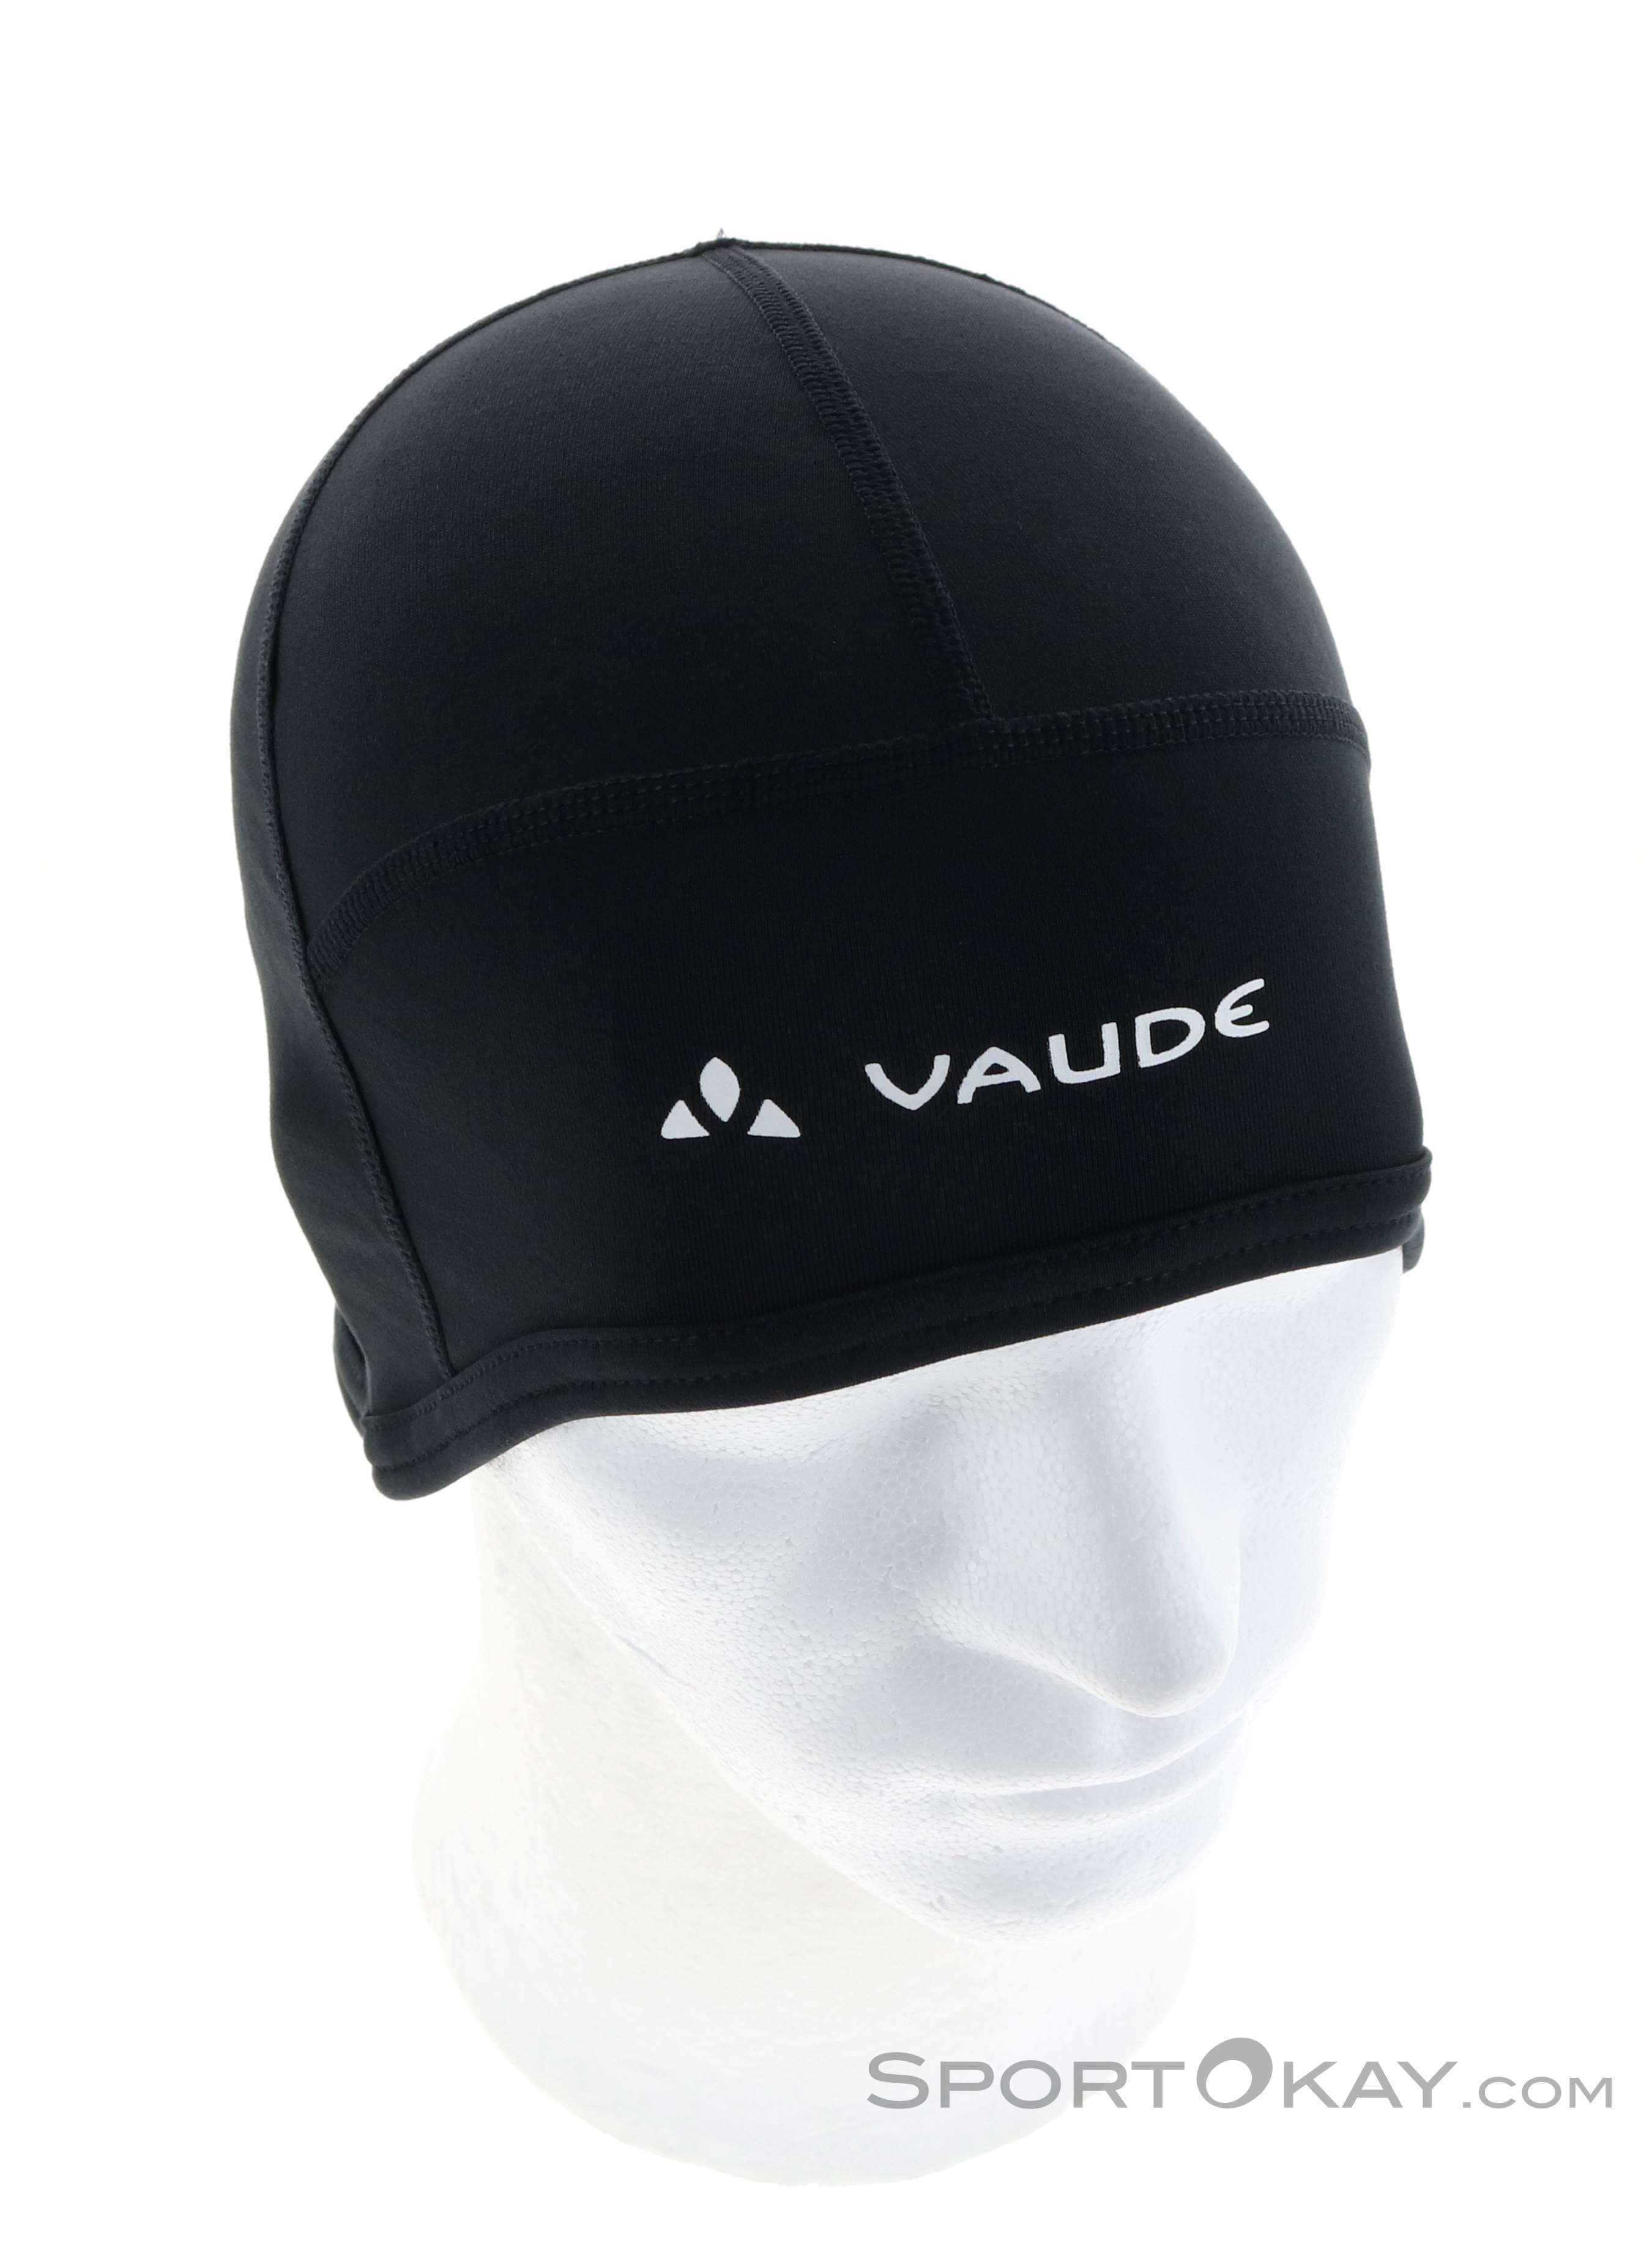 - & - Beanie Outdoor Headbands Bike - Vaude - All Clothing Outdoor Caps Warm